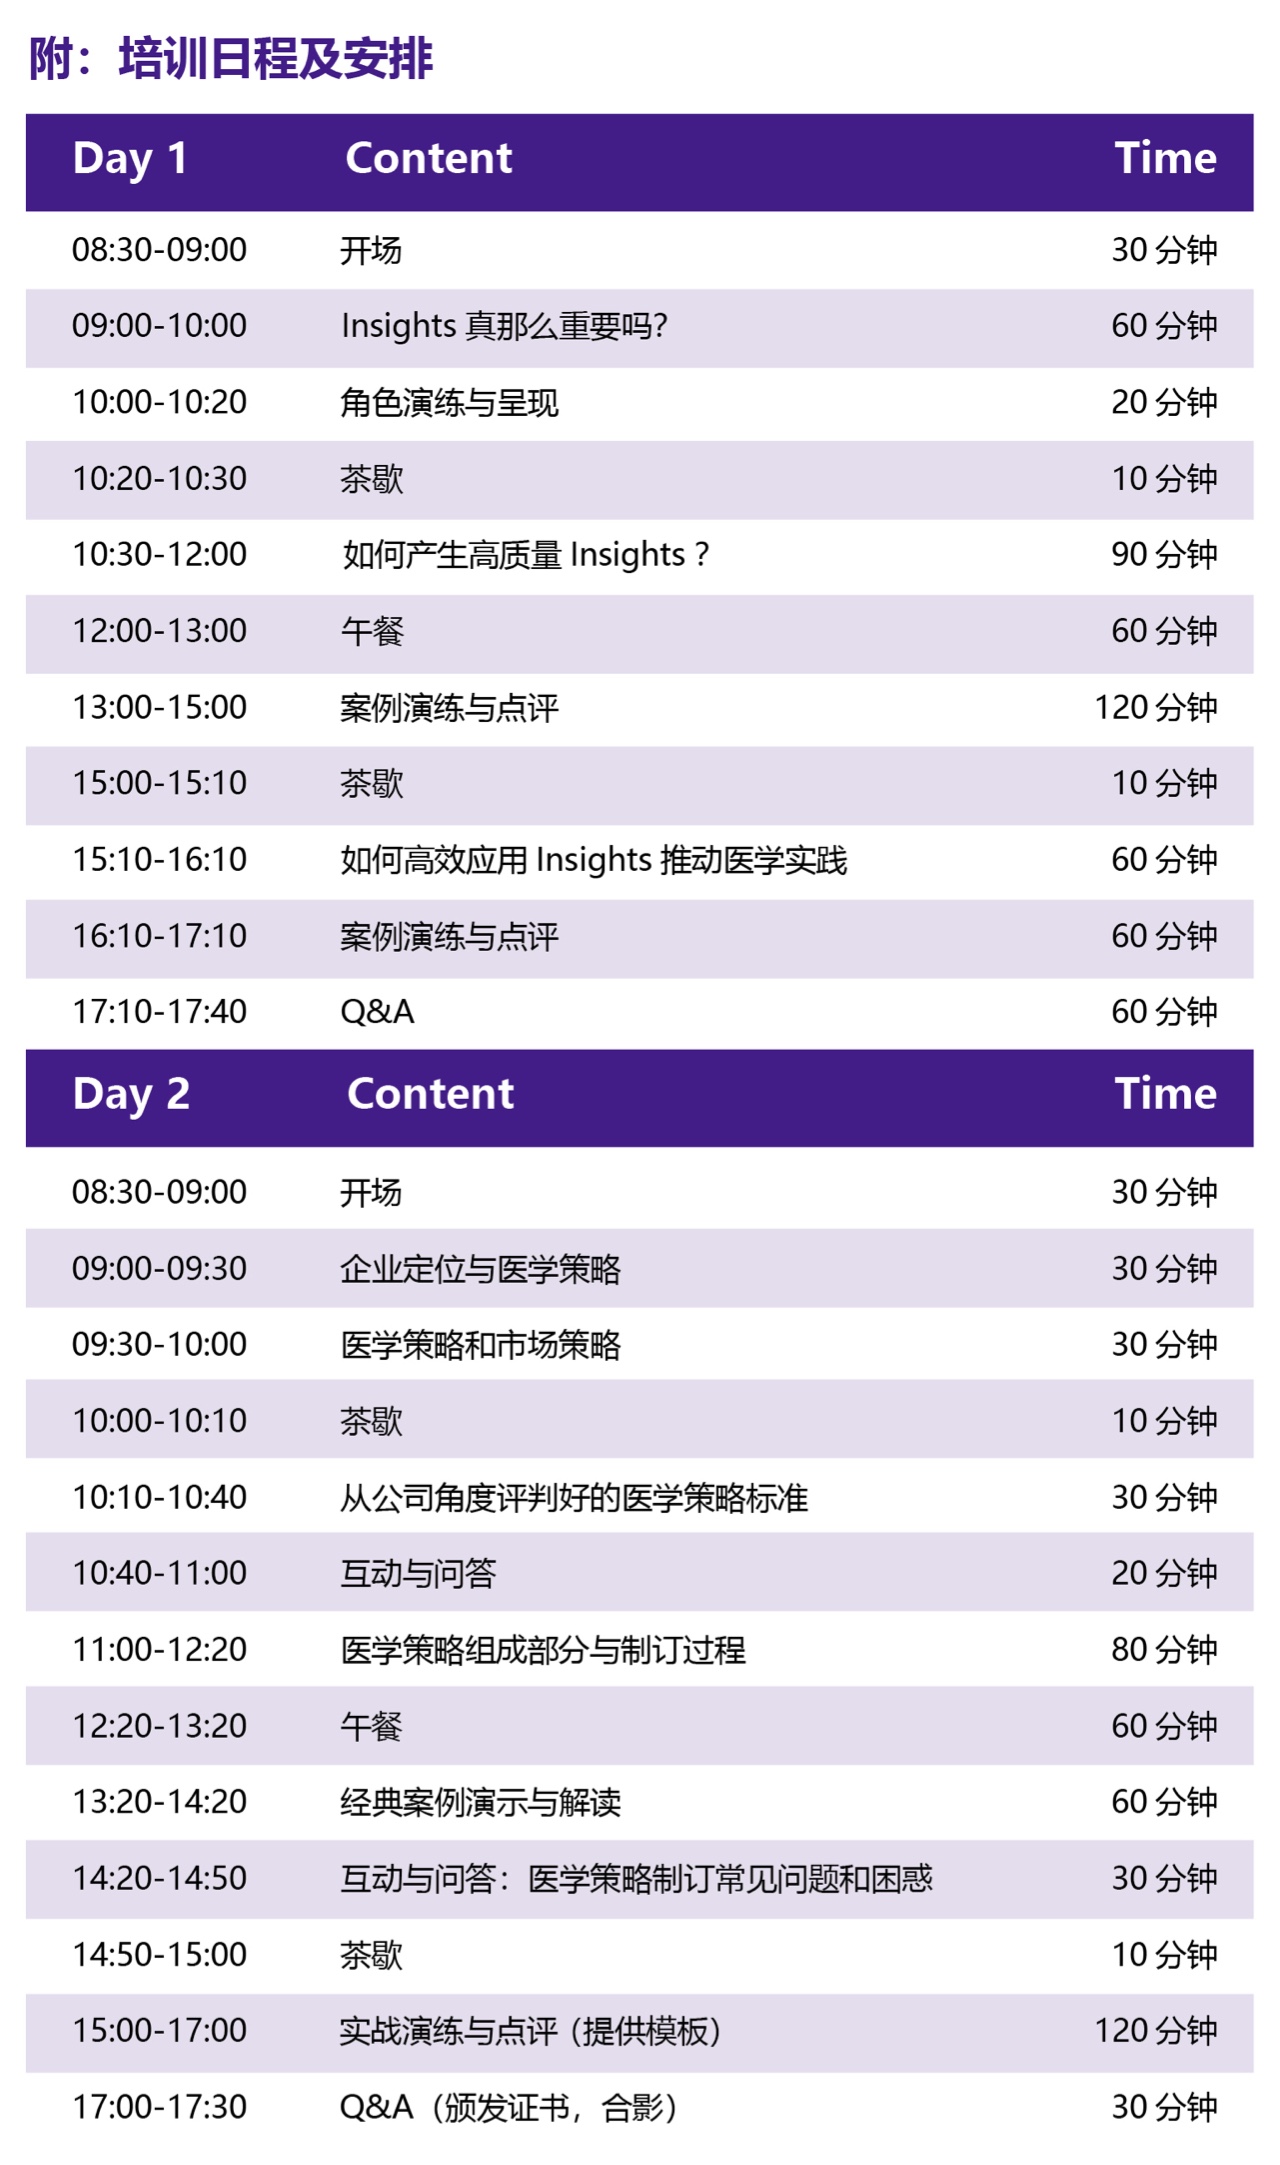 2019医学事务系列培训：基于INSIGHT的医学策略制订（12月北京）